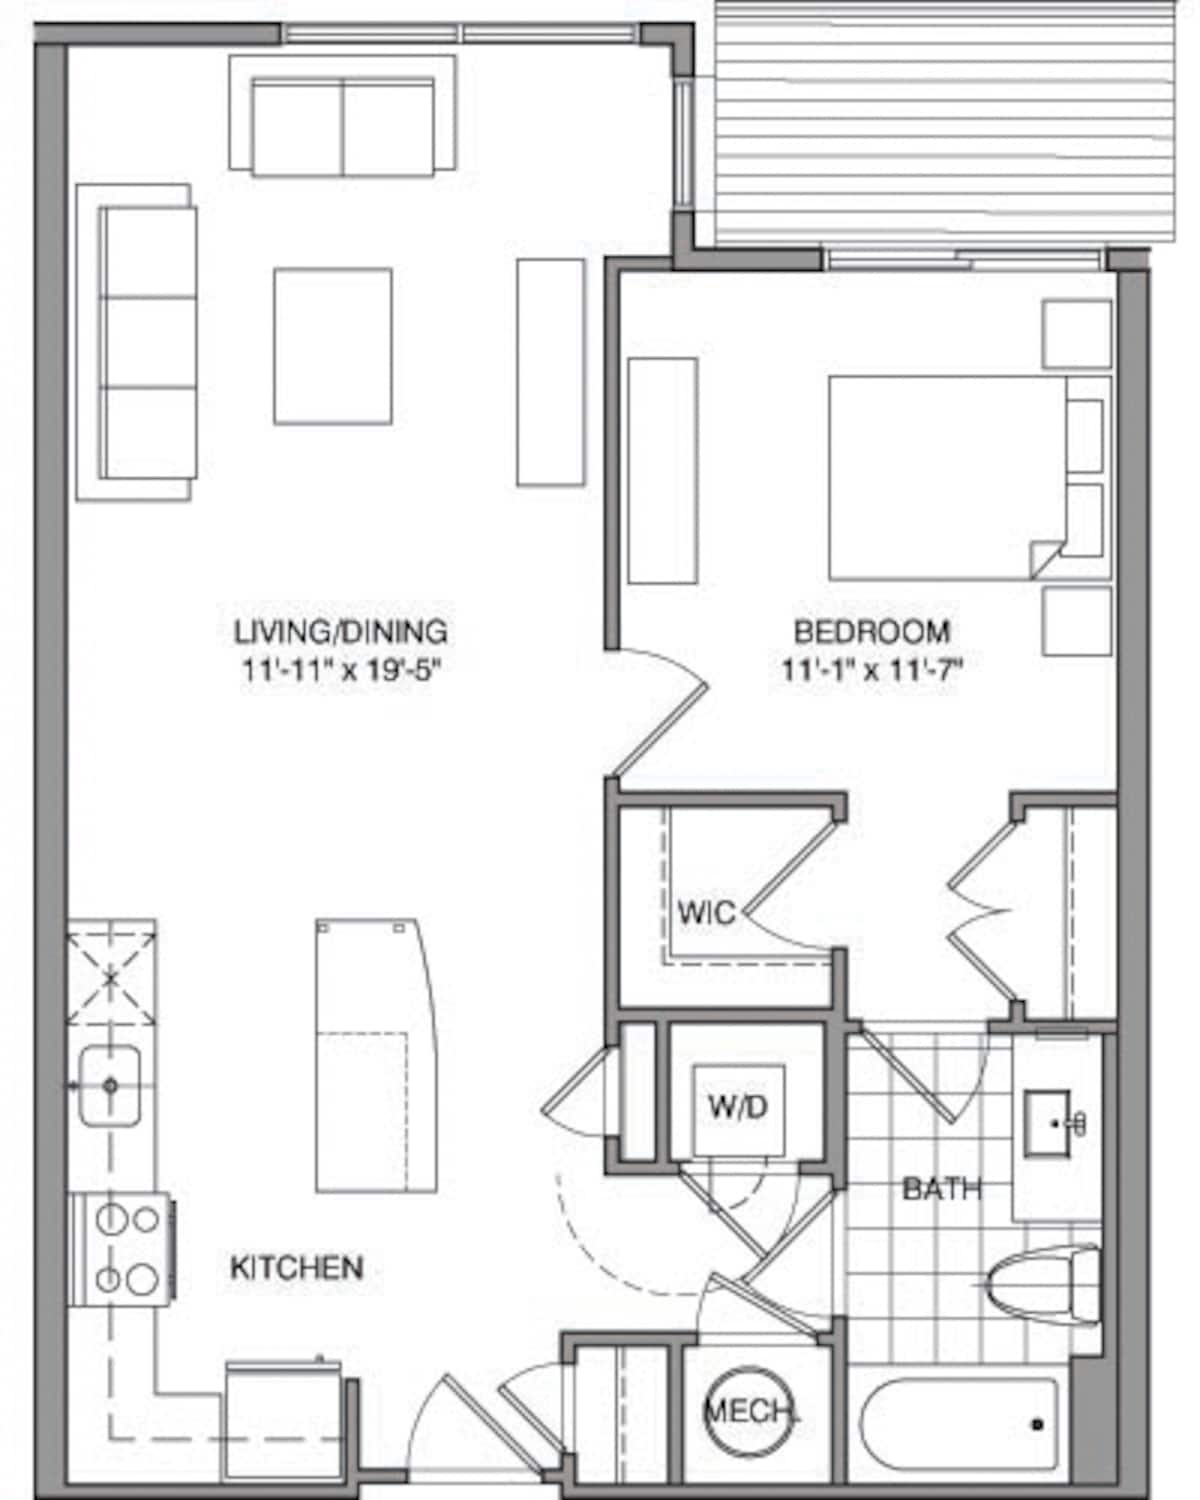 Floorplan diagram for 1 Bdrm H, showing 1 bedroom